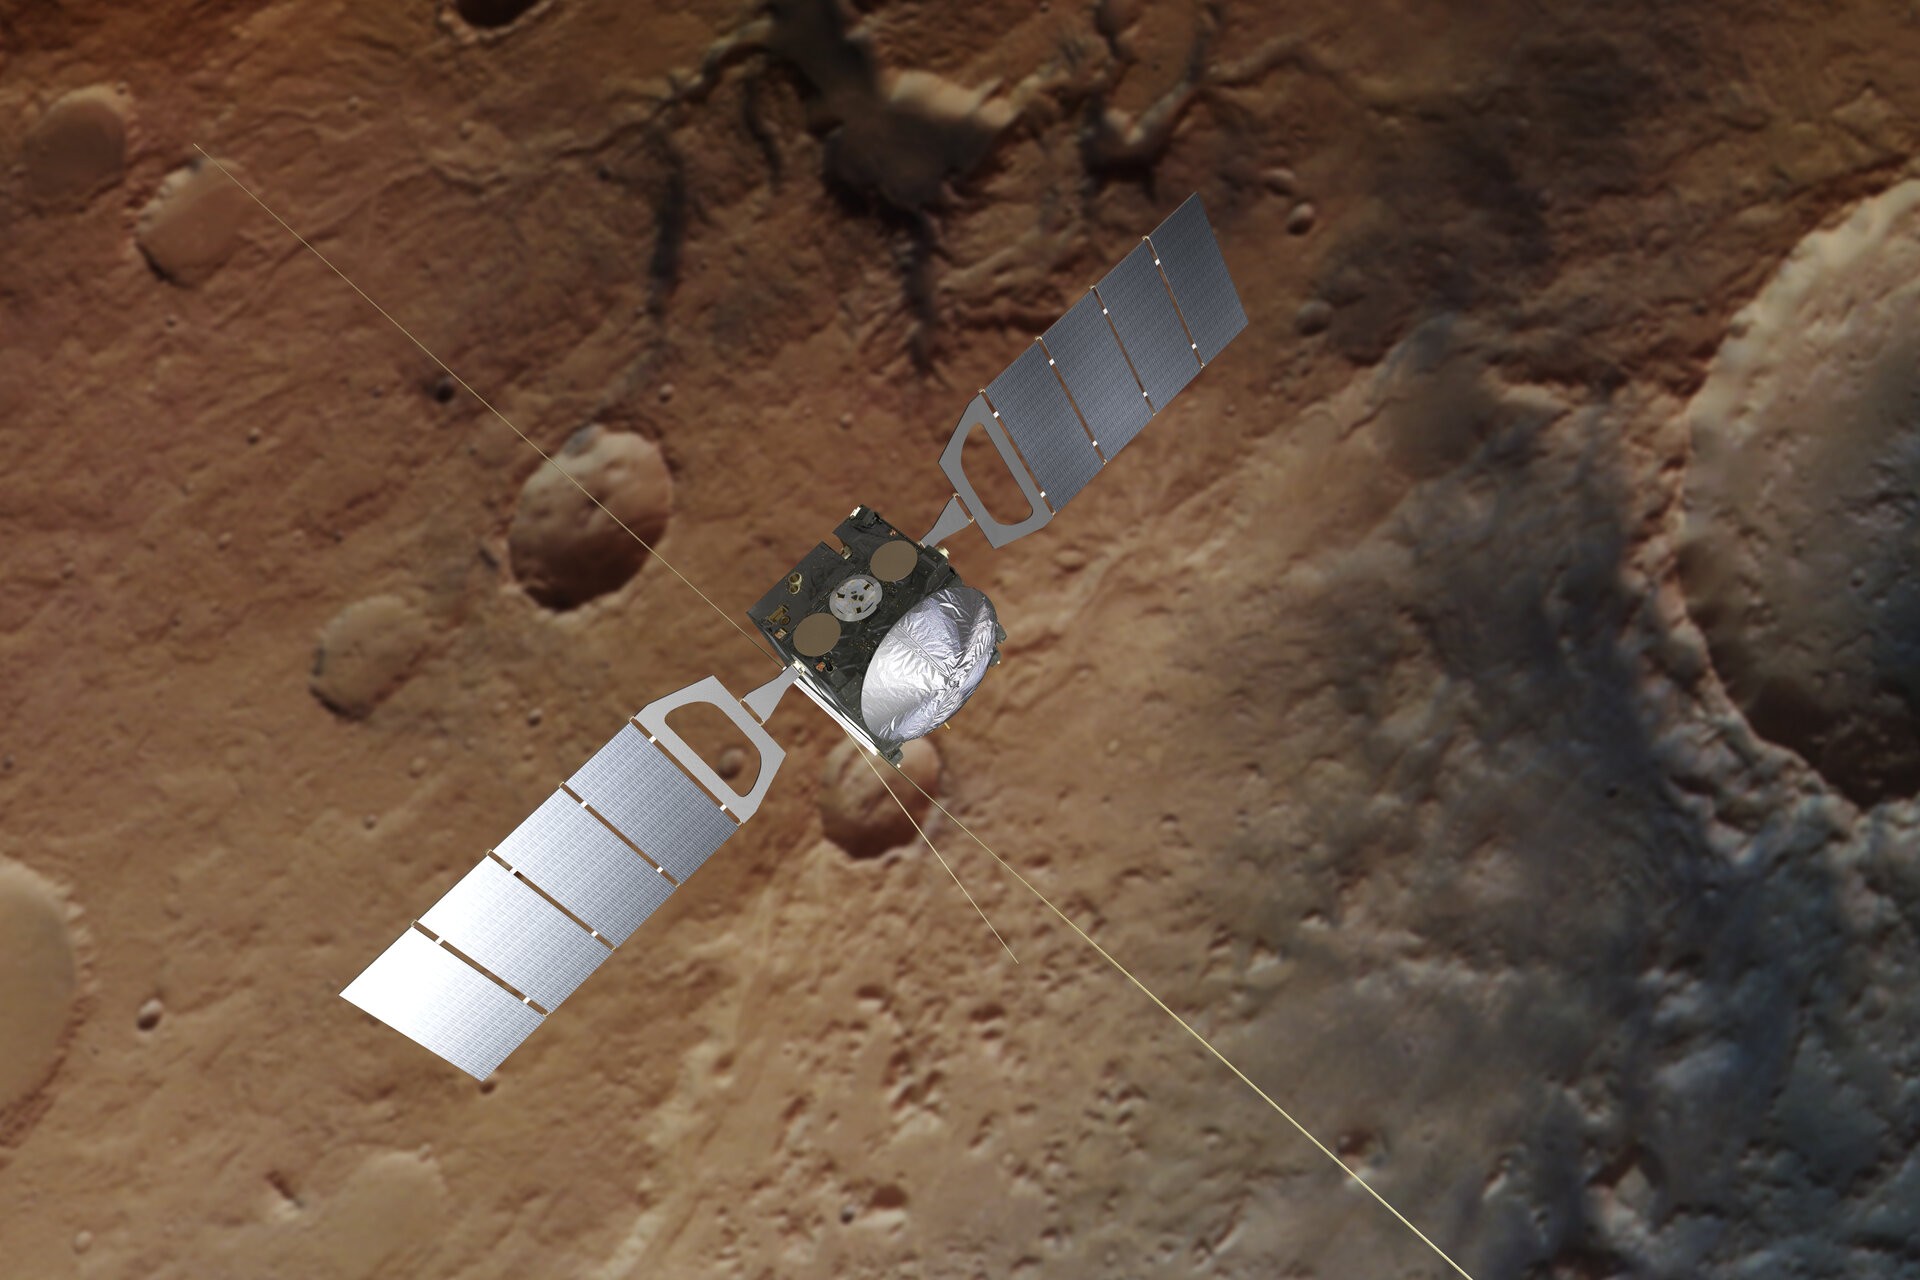 Sonda Mars Express, em órbita ao redor de Marte, foi lançada em 2003 (Foto: Reprodução/ESA)